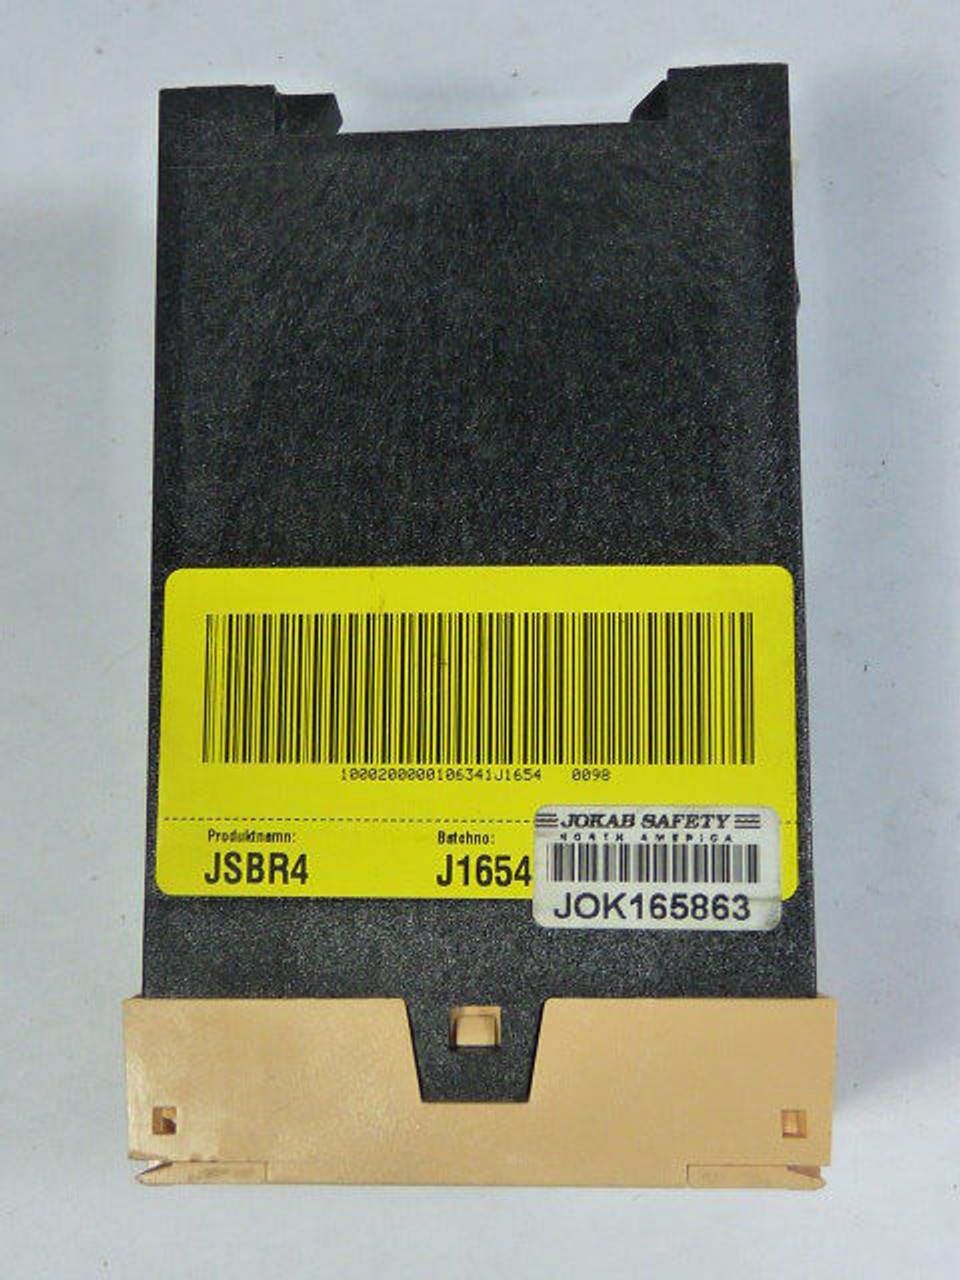 Jokab Safety JSBR4 24 VDC Safety Relay USED